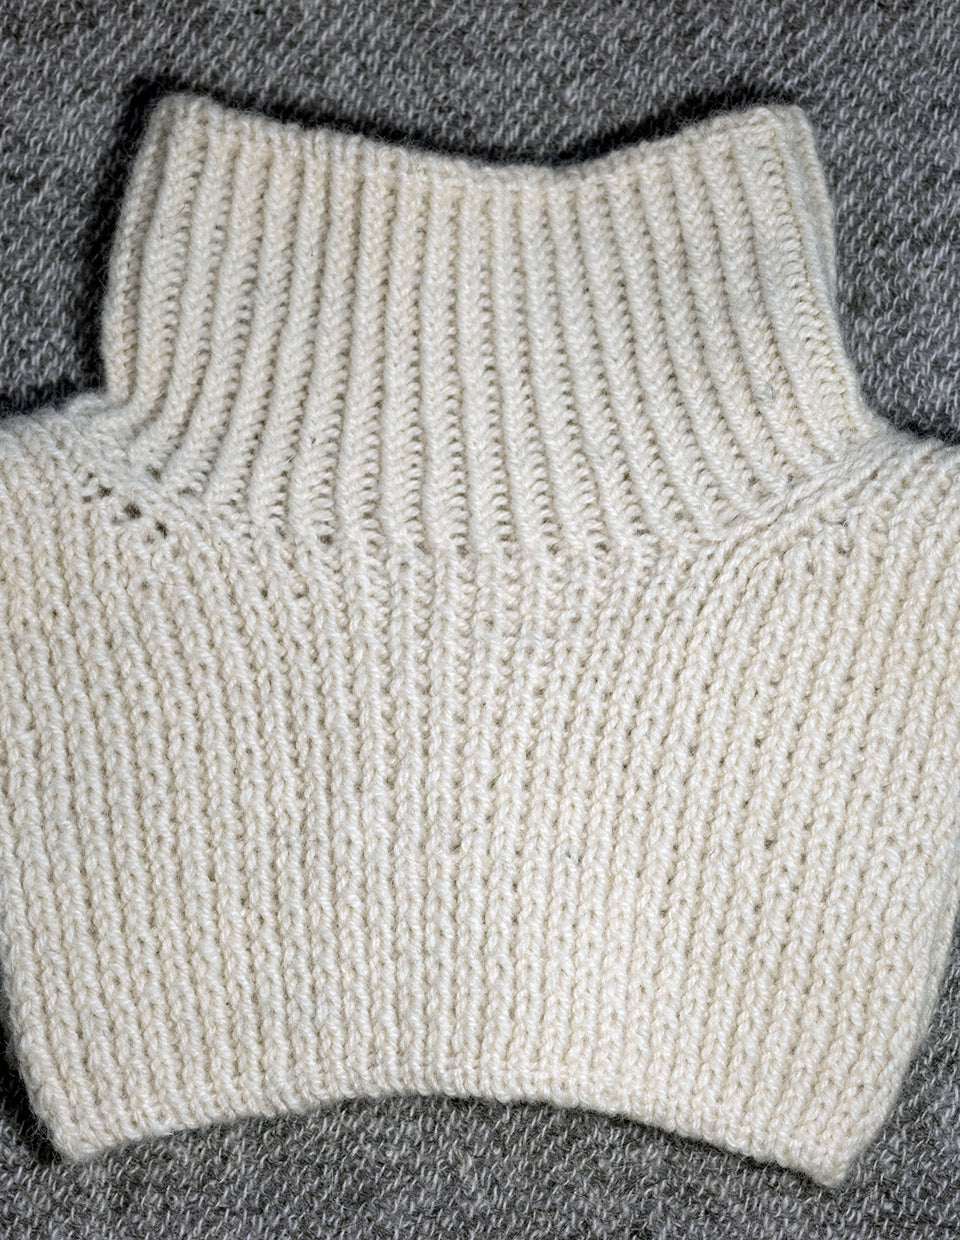 Kløver cowl, 3 ply knitting kit